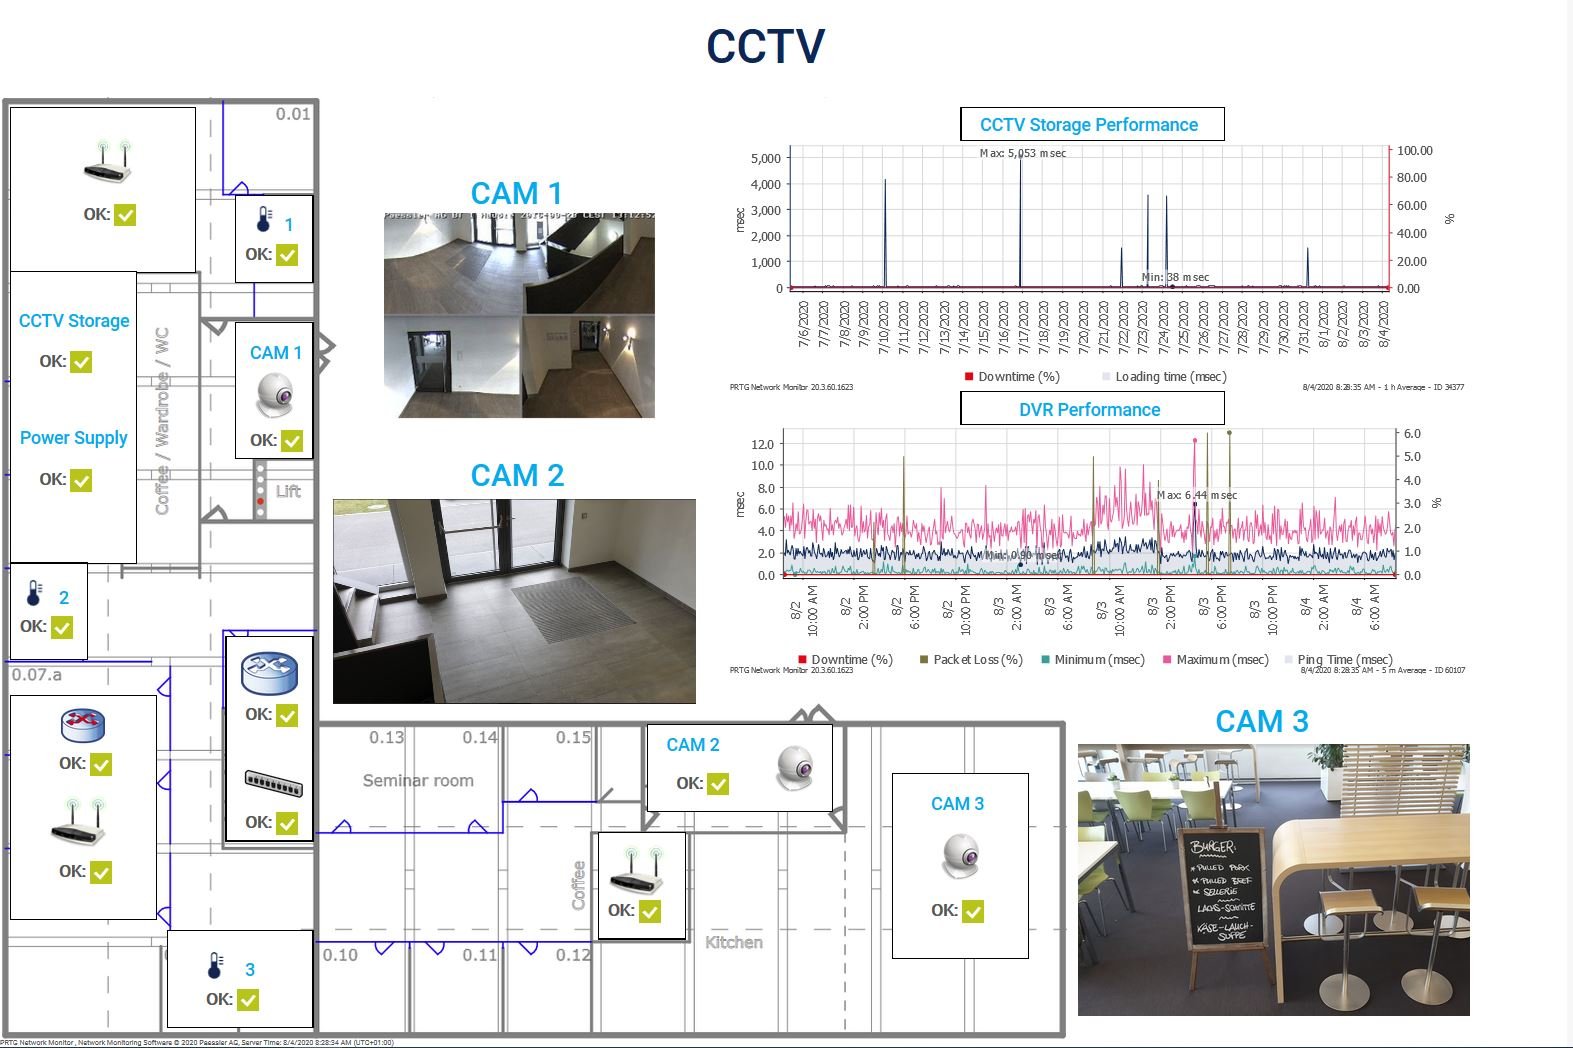 Manténgase al corriente sobre lo que sucede en sus instalaciones con un panel de monitoreo de CCTV